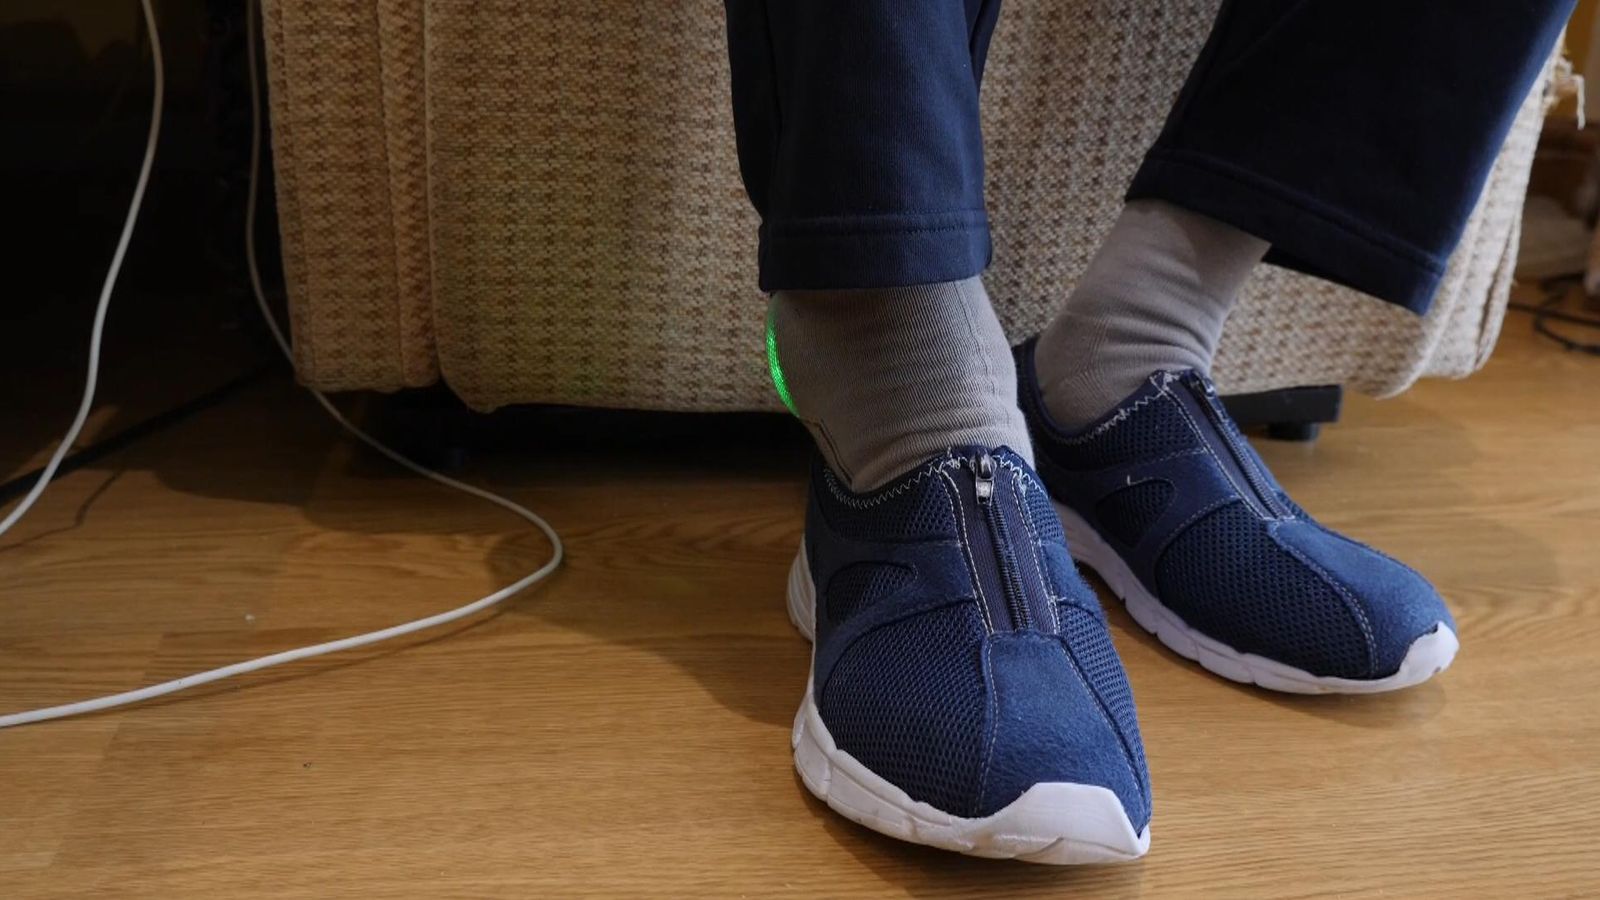 Kaus kaki berteknologi tinggi dapat mencegah jatuh dan penyakit pada penderita demensia |  Berita sains dan teknologi